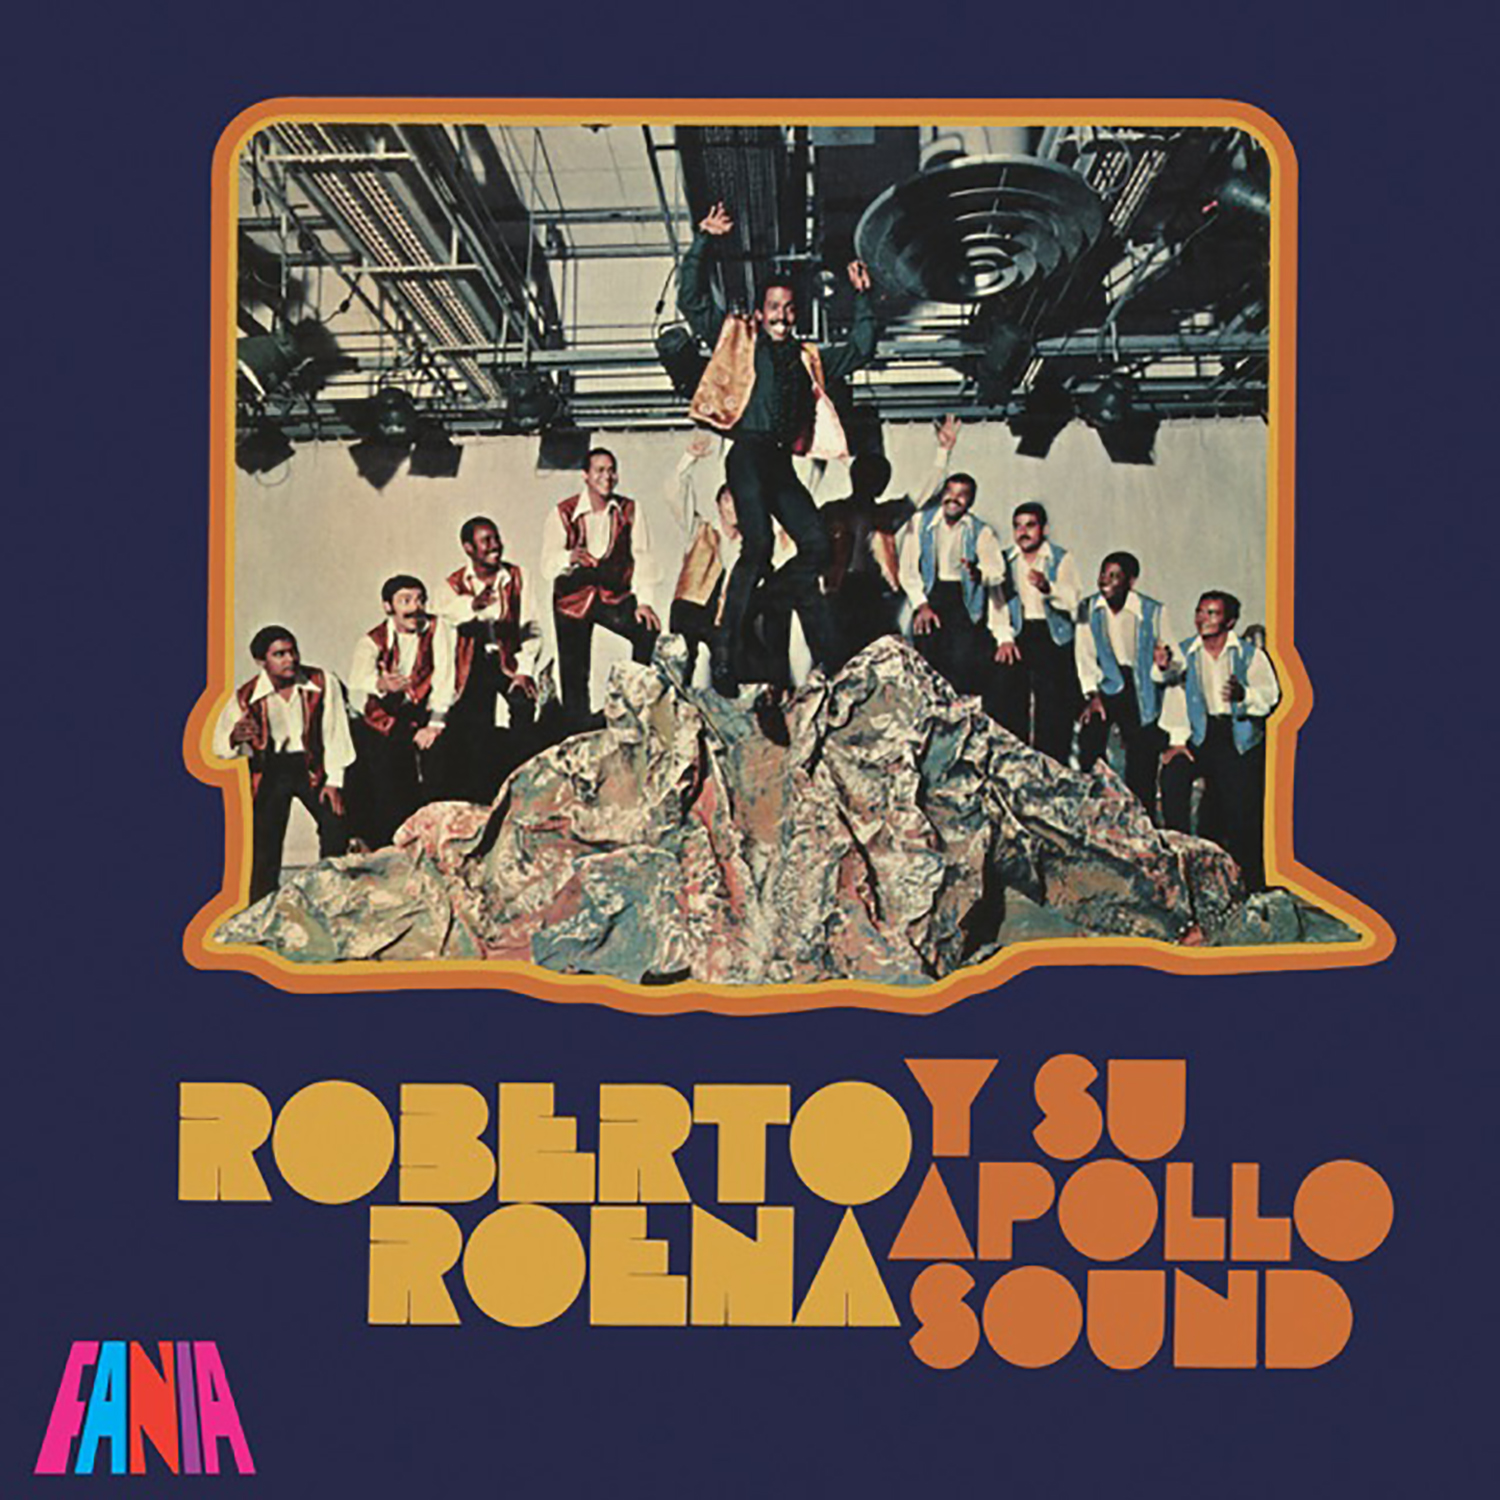 Roberto Roena y Su Apollo Sound album cover